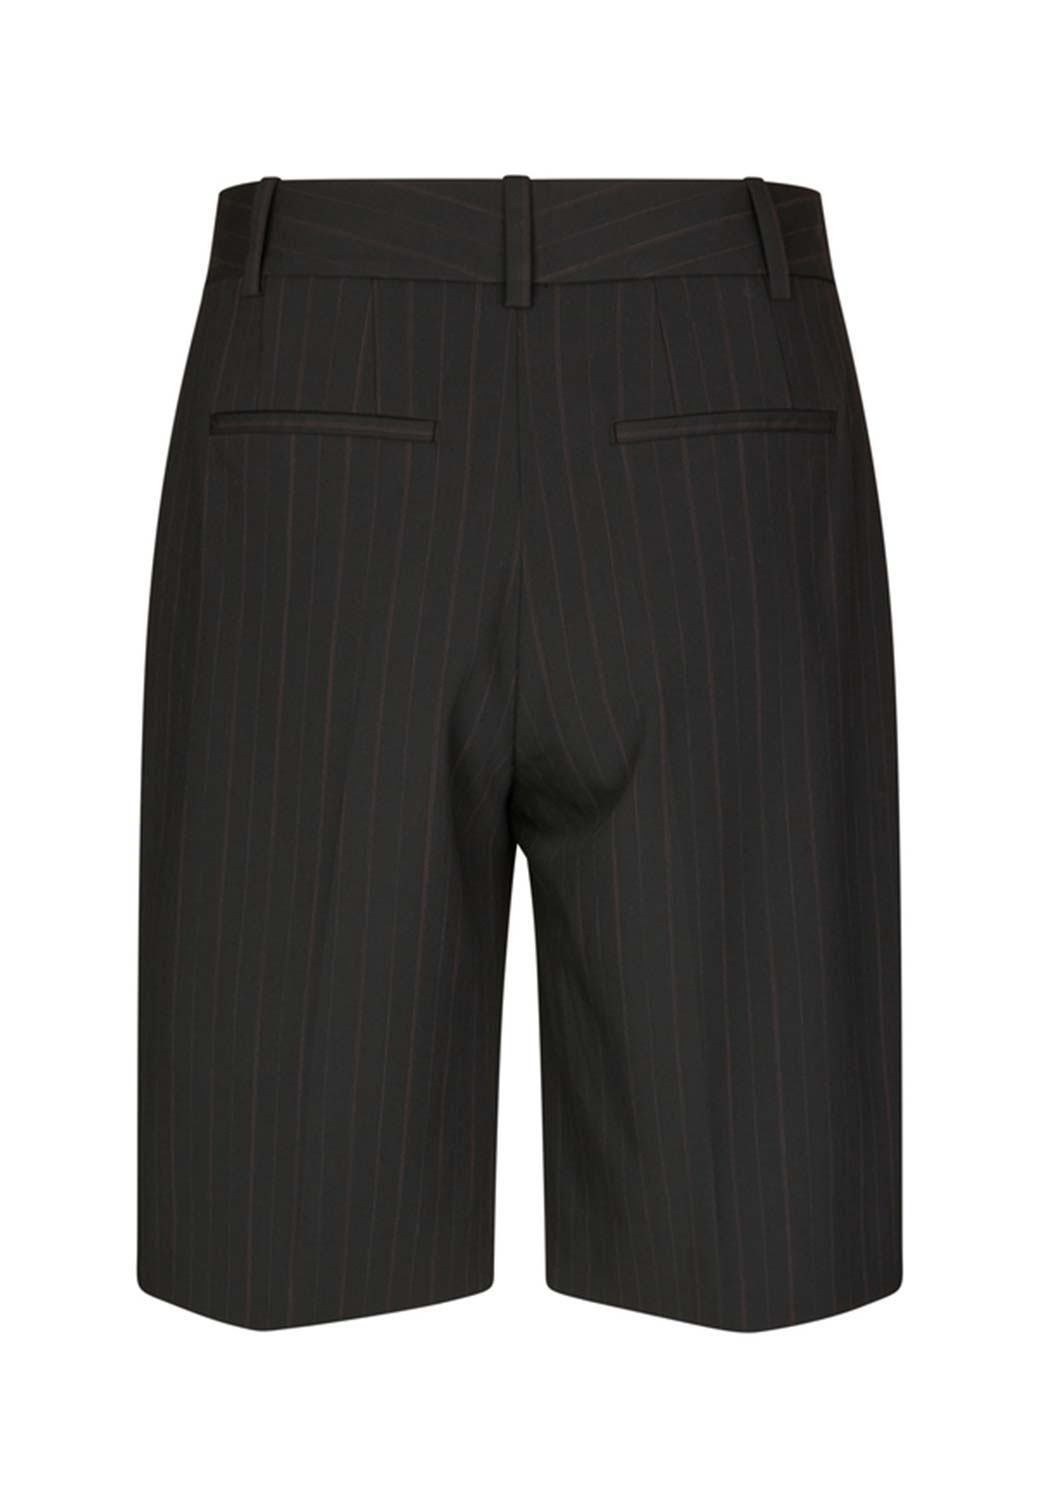 Dark Slate Gray מכנסיים קצרים לנשים Sahaveny SAMSOE SAMSOE